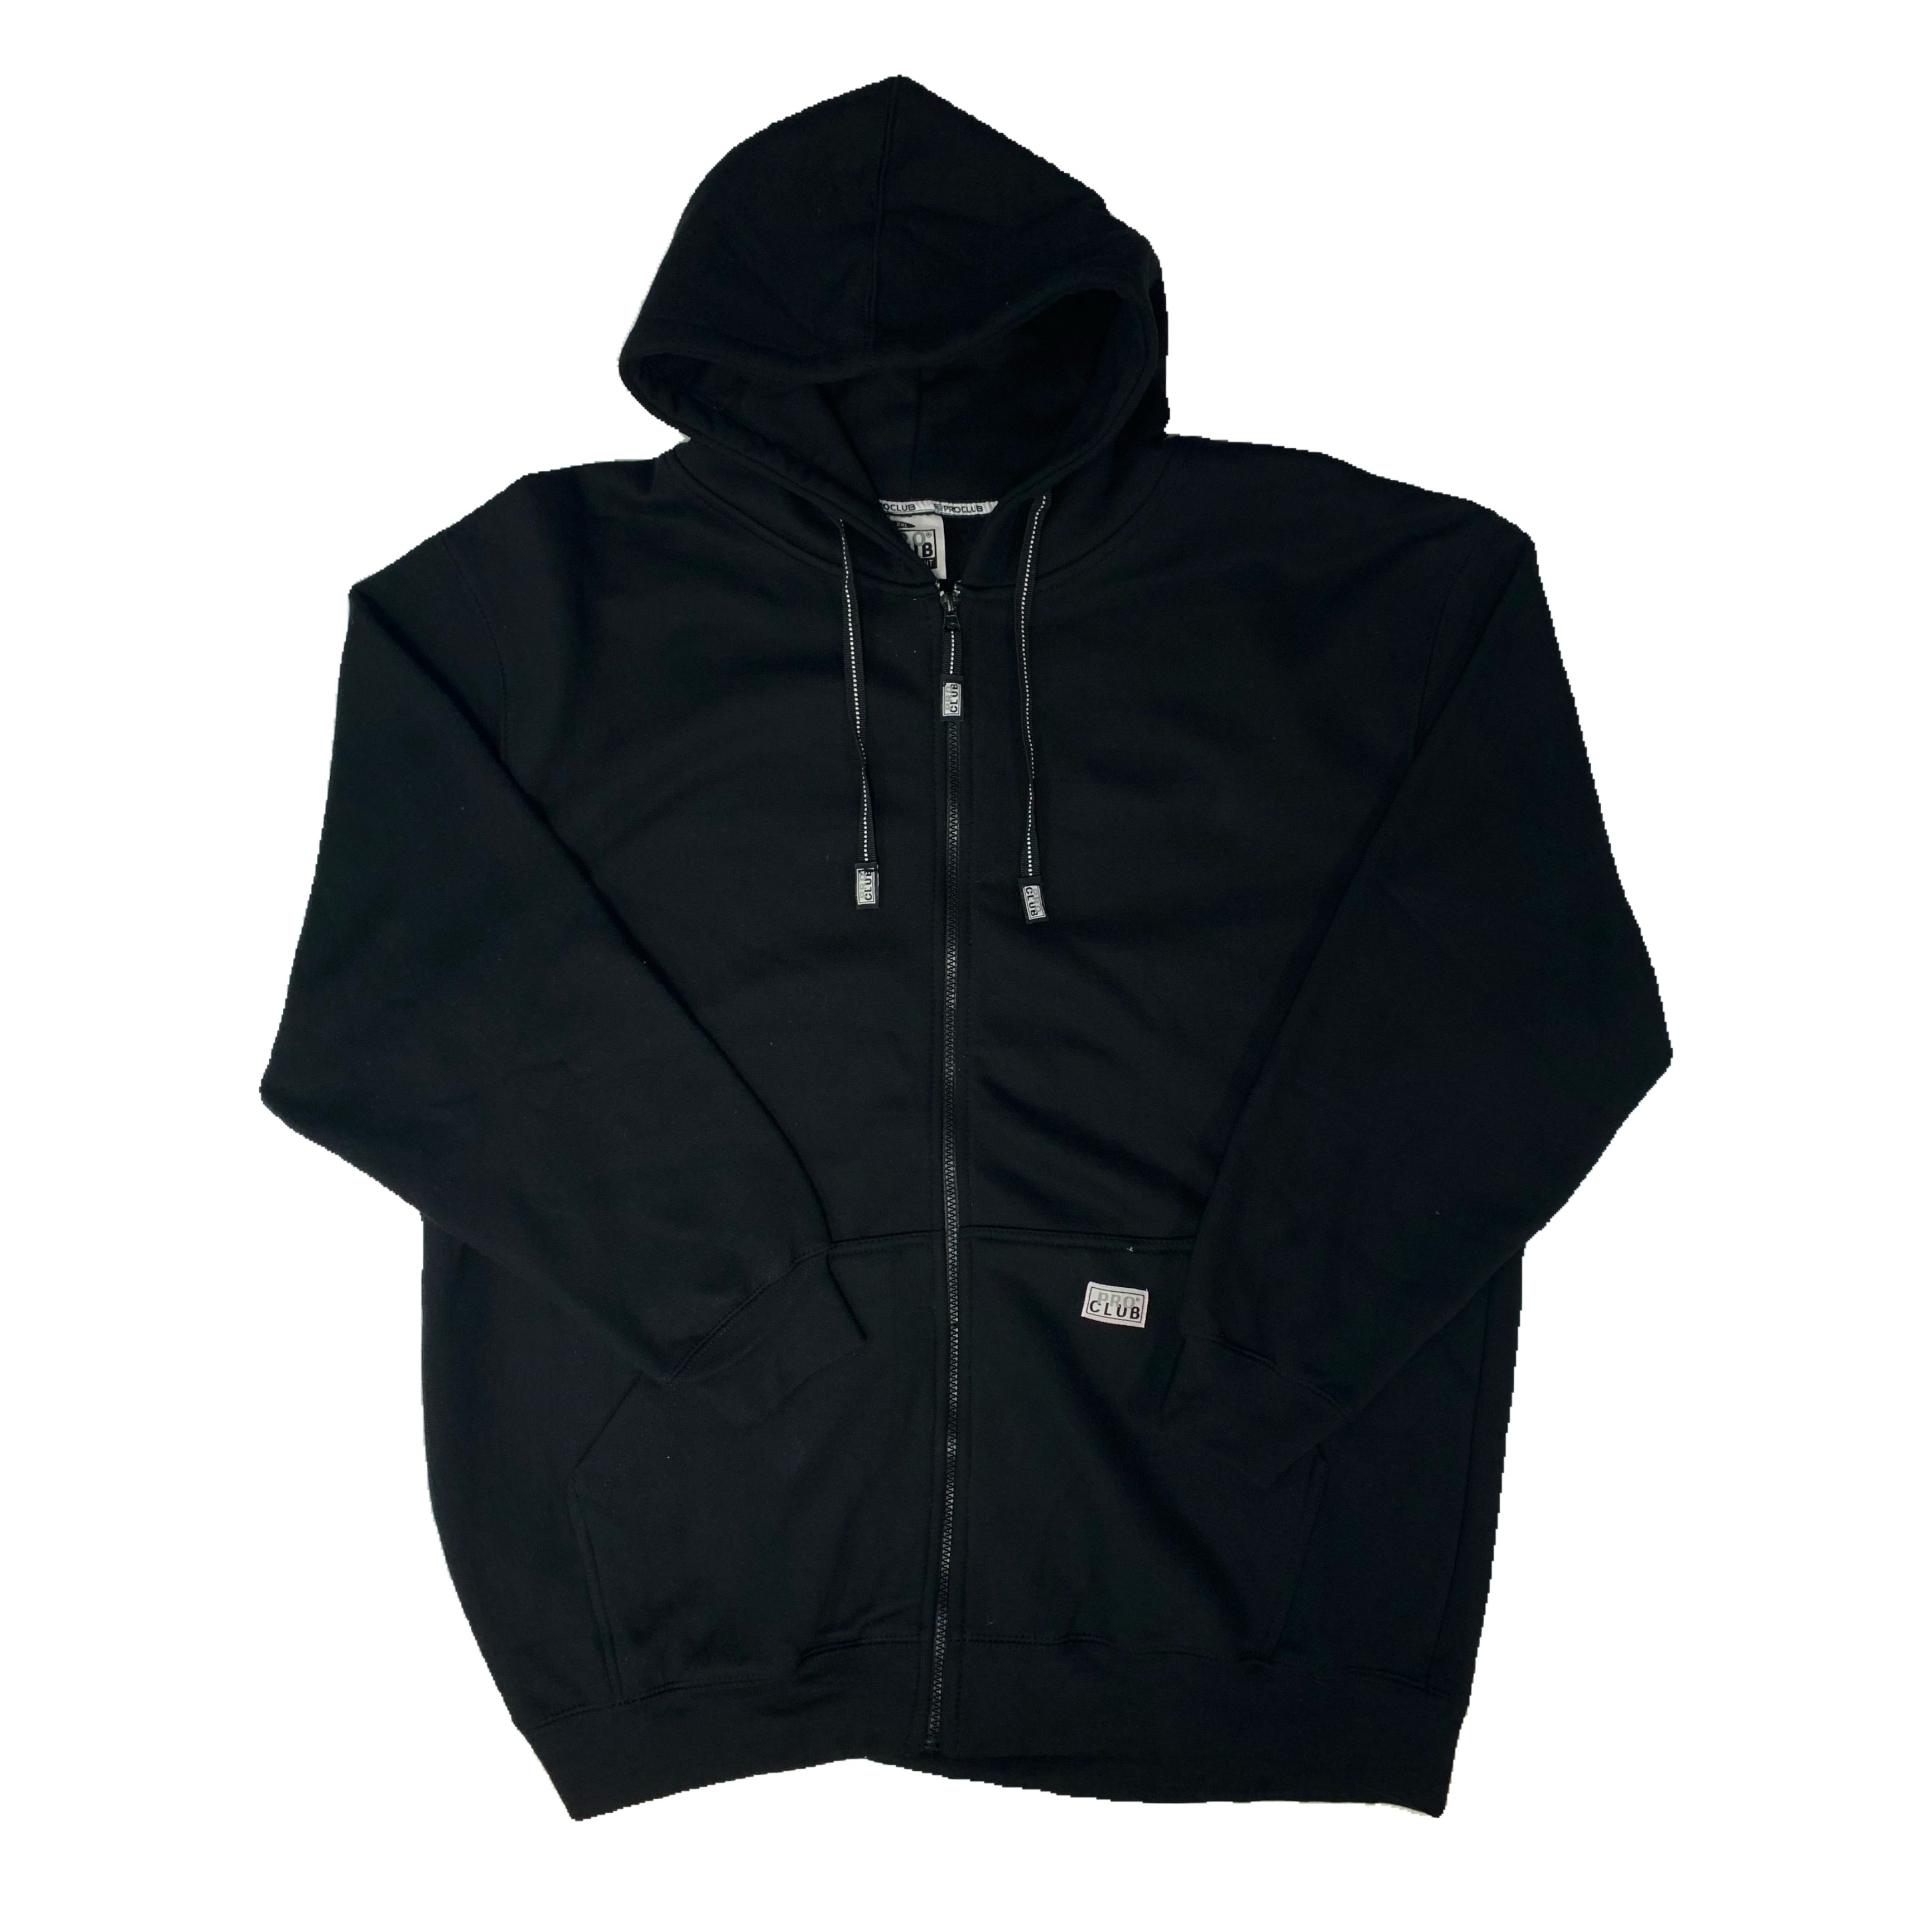 Pro Club Men's Fleece Lined Windbreaker Jacket : : Clothing, Shoes  & Accessories